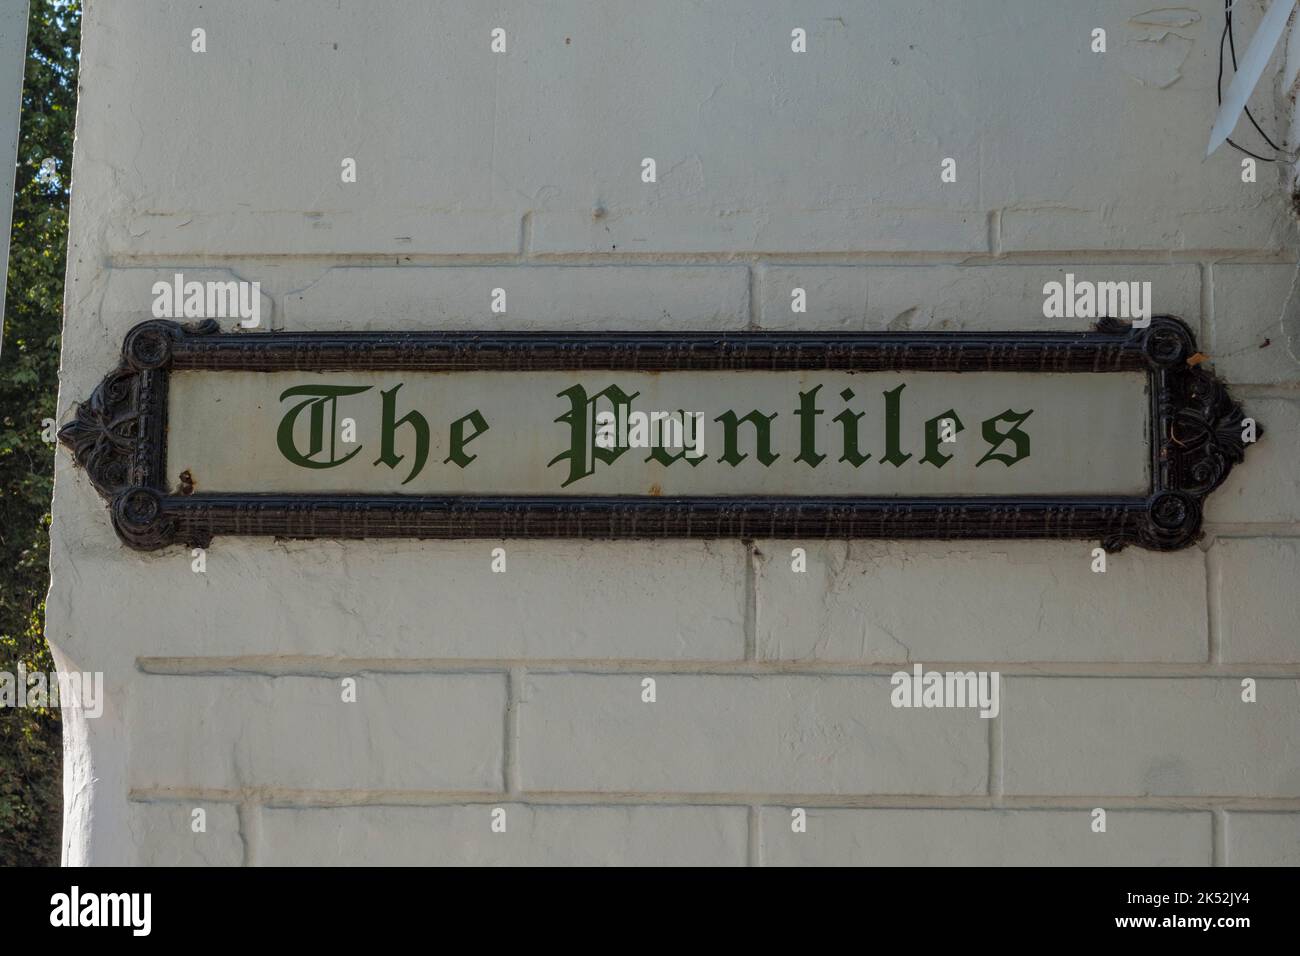 'The Pantiles' street sign in the Pantiles area of Royal Tunbridge Wells, Kent, UK. Stock Photo